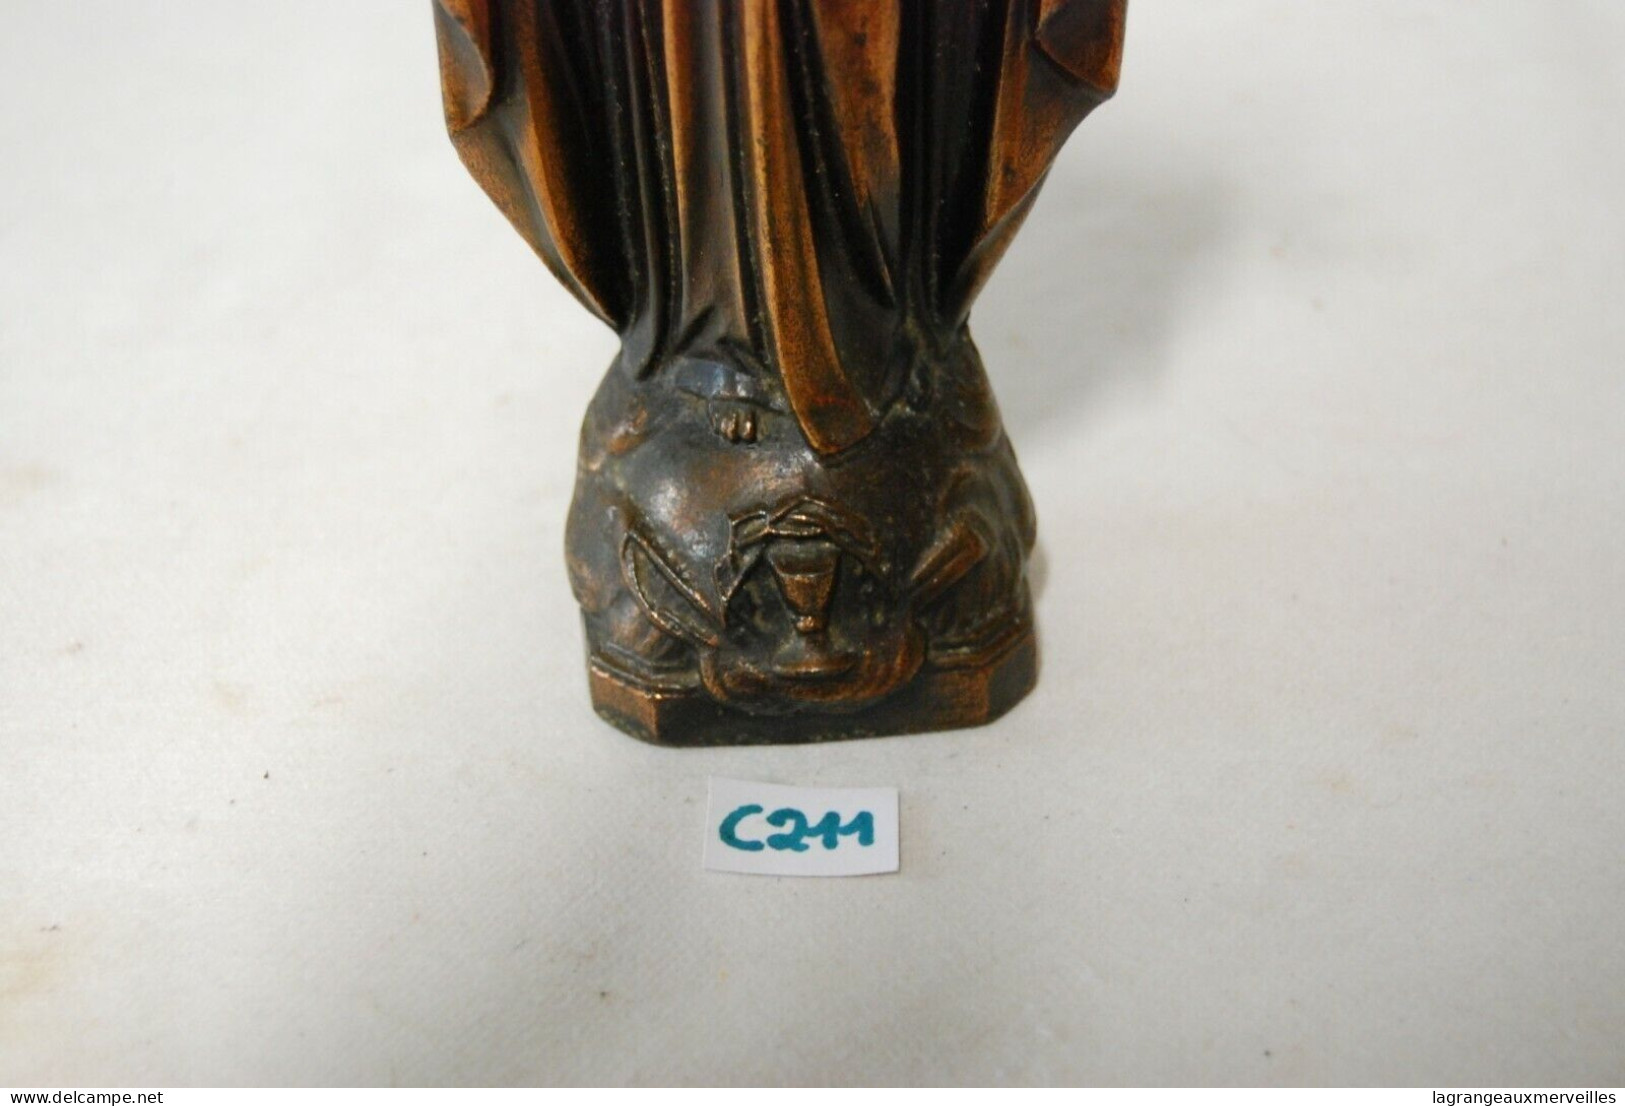 C211 Statuette Du Christ - Jésus - Objet Religieux - Art Religieux